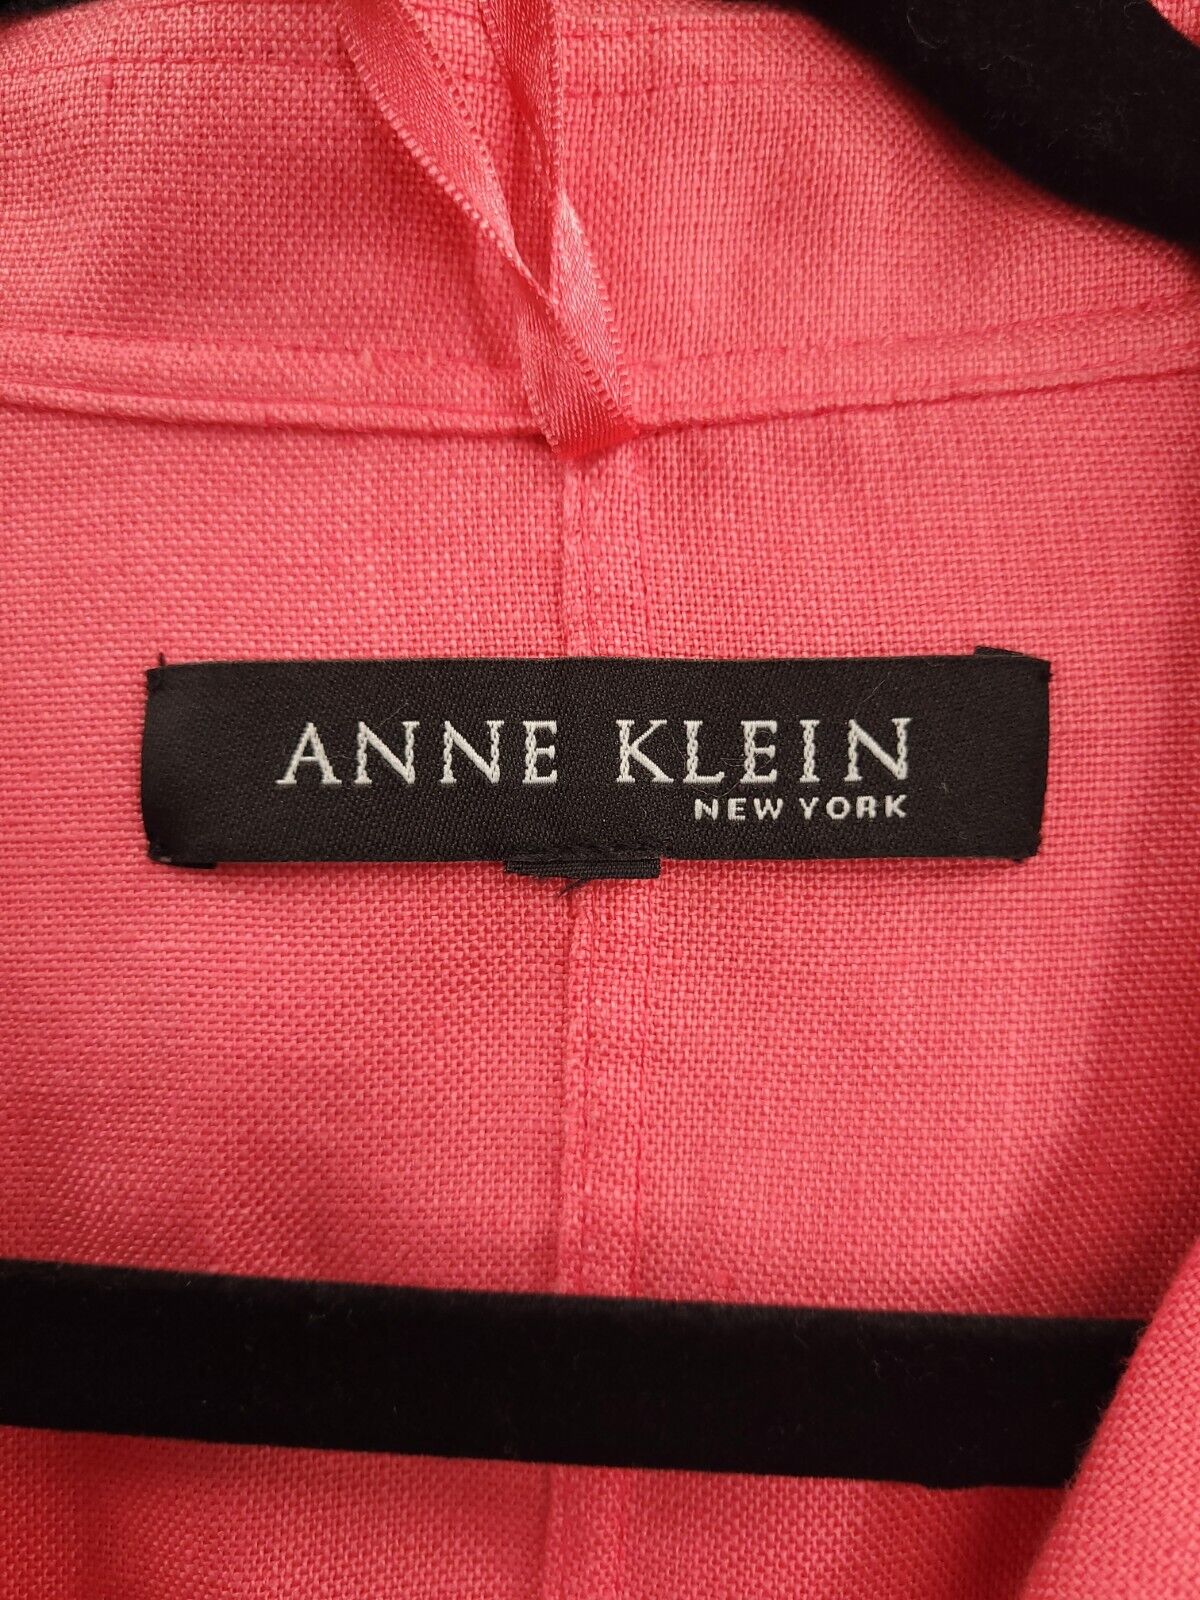 Anne Klein 100% Linen Blazer Womens Medium Open F… - image 5